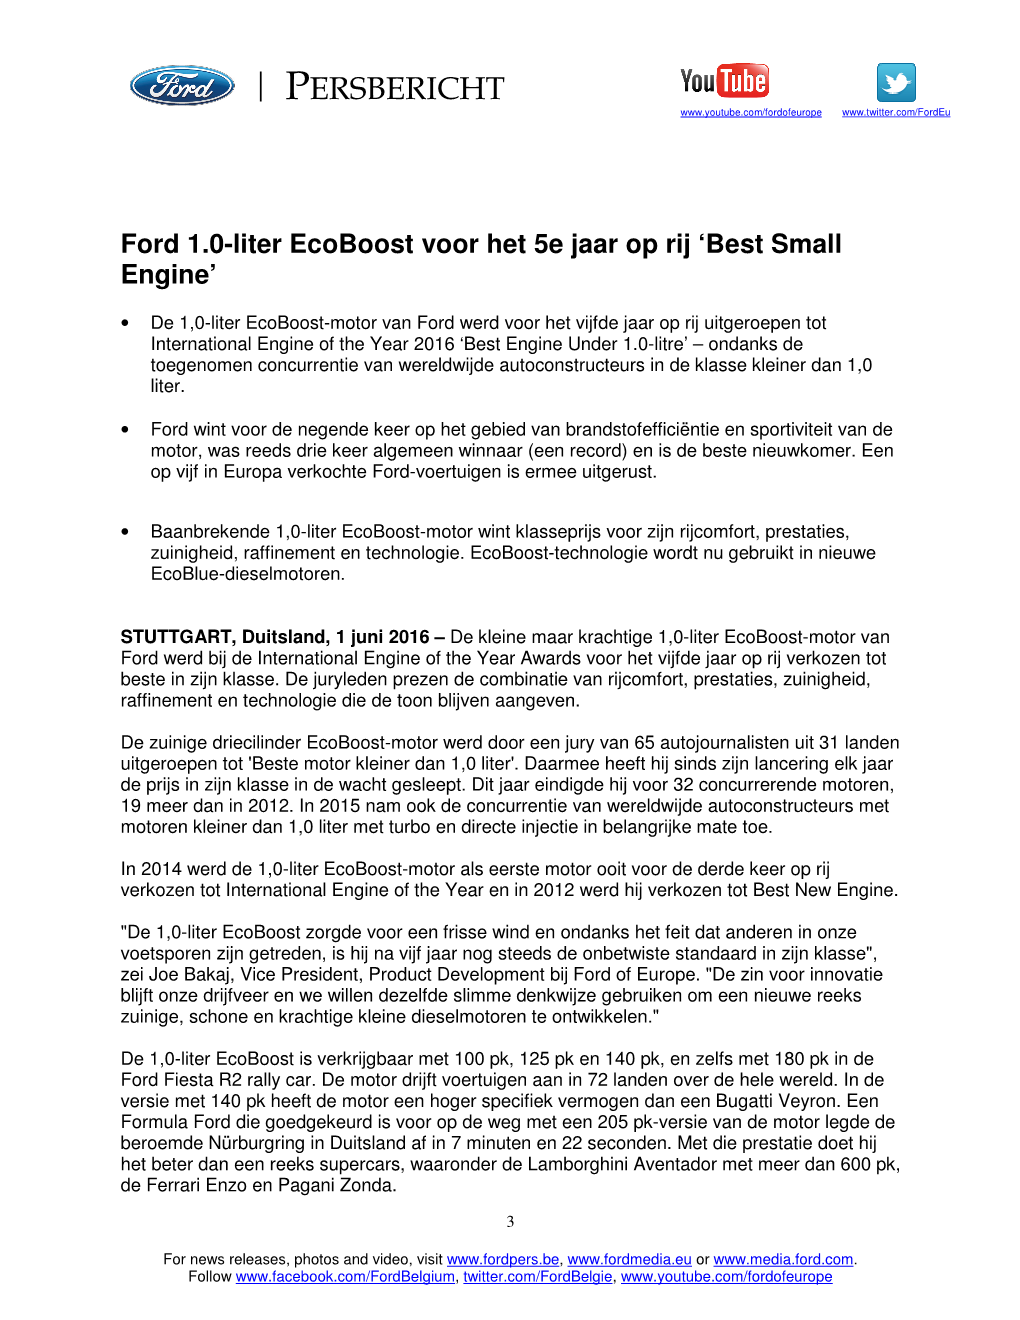 Ford 1.0-Liter Ecoboost Voor Het 5E Jaar Op Rij 'Best Small Engine'